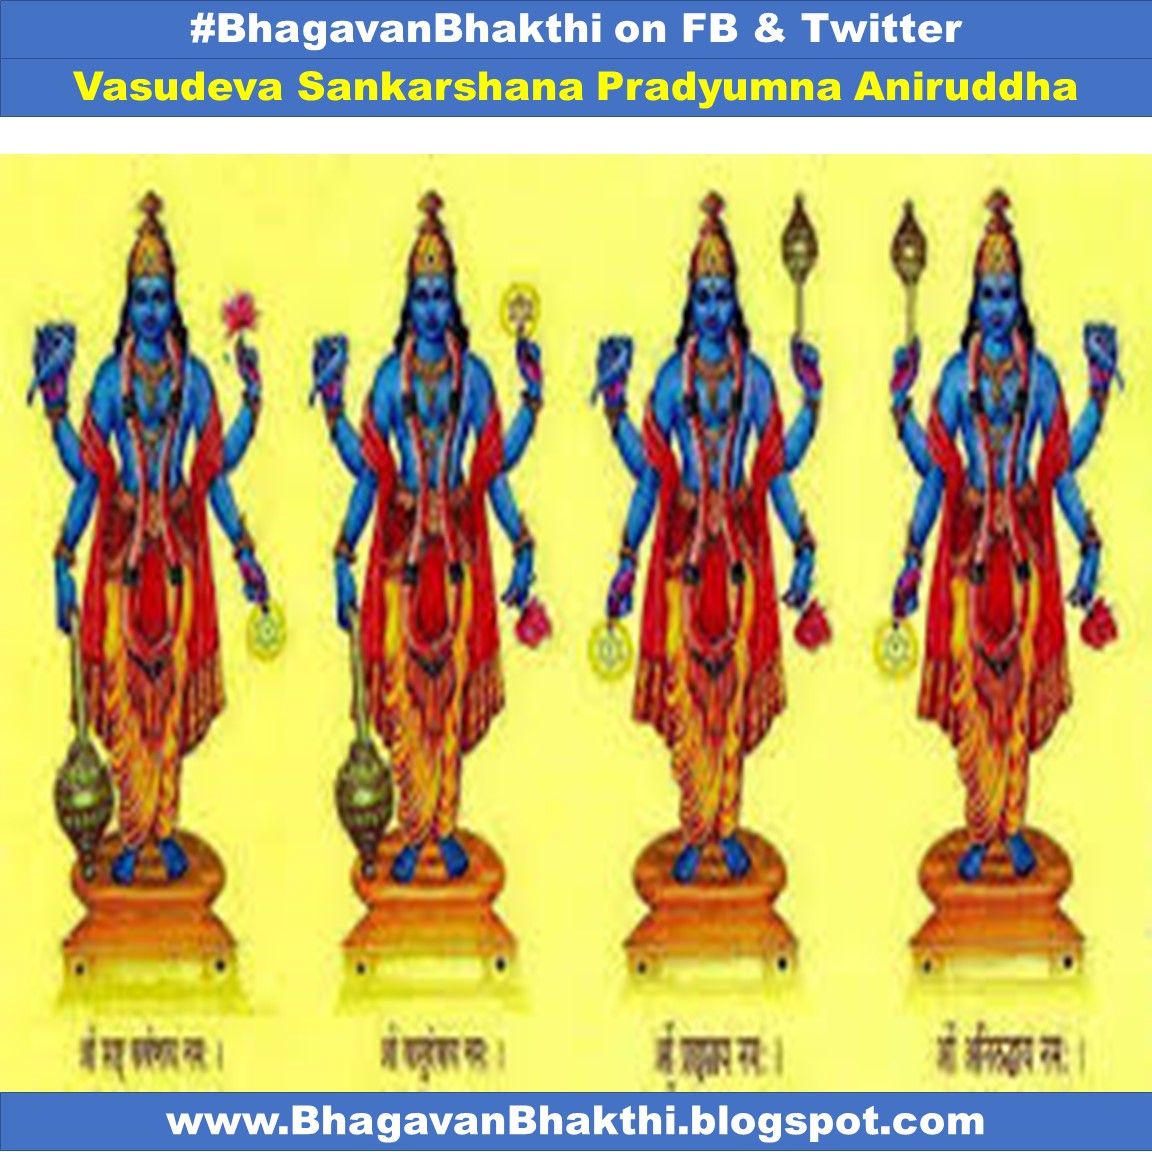 Vasudeva Sankarshan Pradyumna Aniruddha names explanation